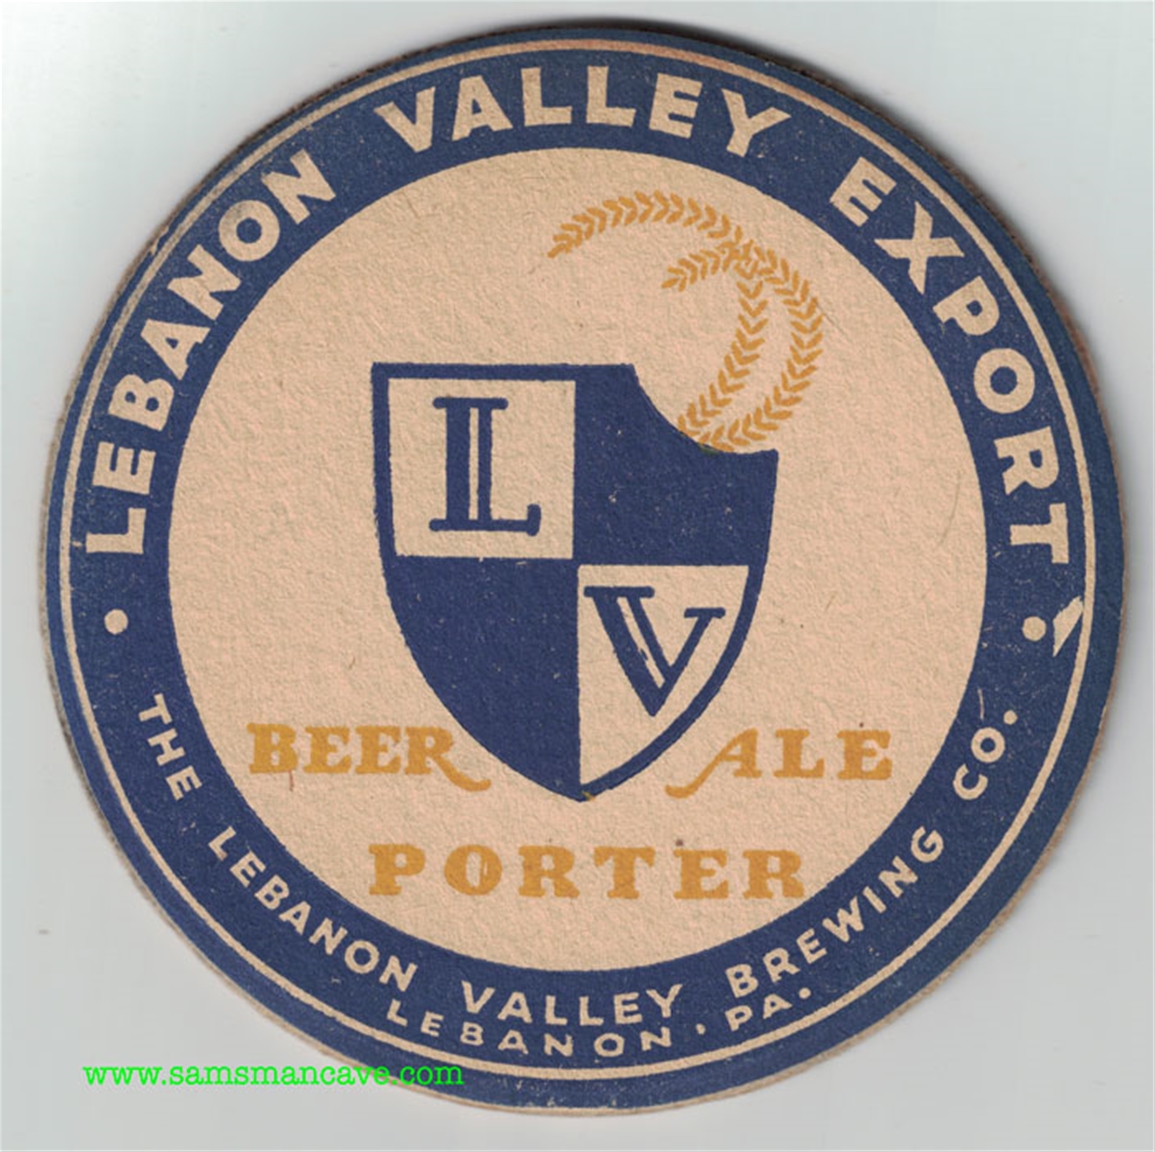 Lebanon Valley Beer Ale Porter Coaster